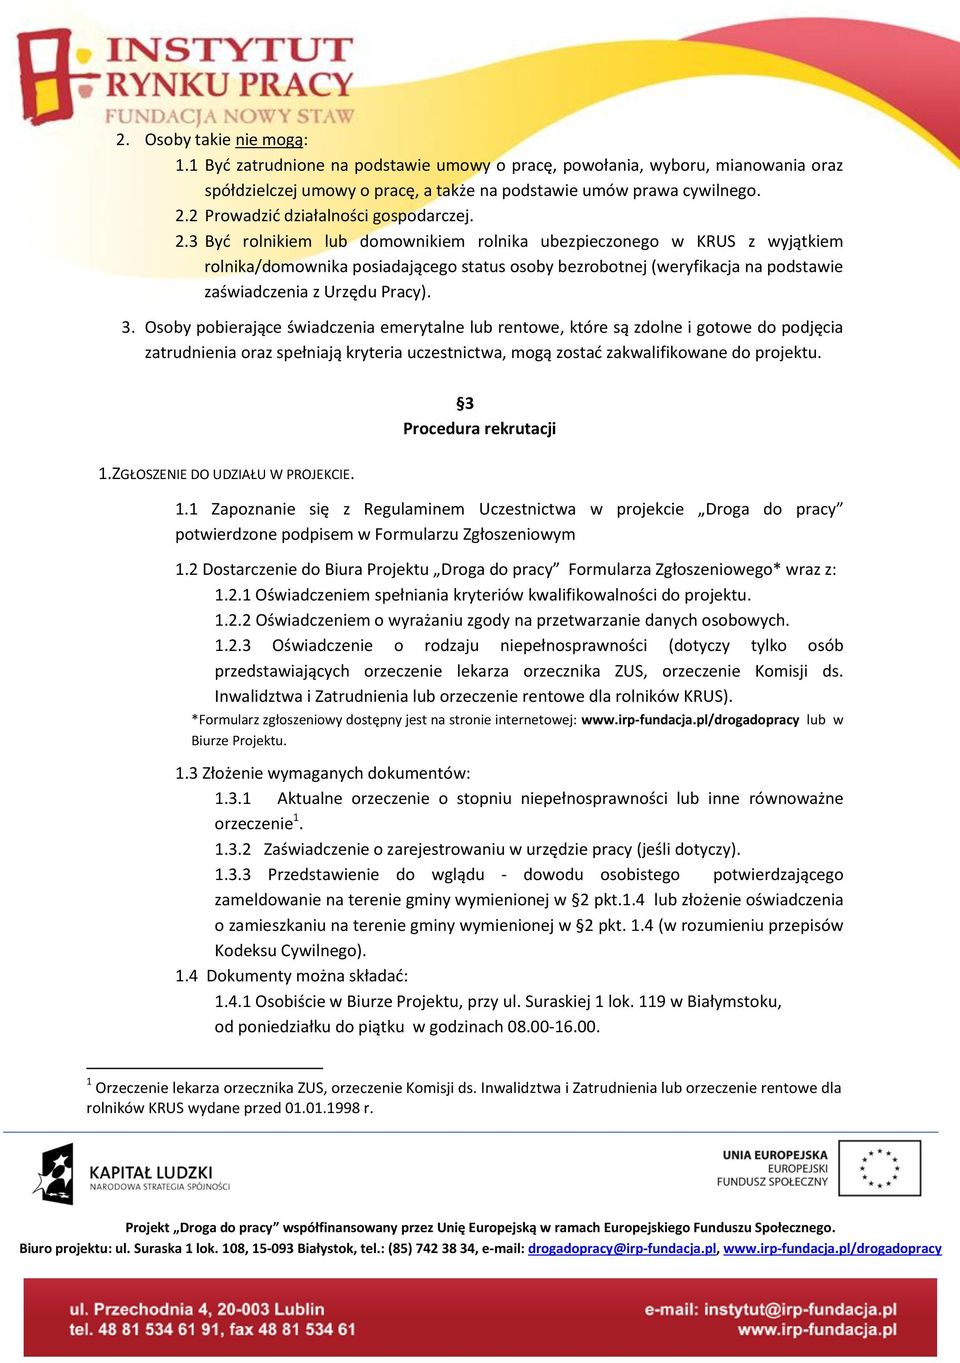 3 Być rolnikiem lub domownikiem rolnika ubezpieczonego w KRUS z wyjątkiem rolnika/domownika posiadającego status osoby bezrobotnej (weryfikacja na podstawie zaświadczenia z Urzędu Pracy). 3.